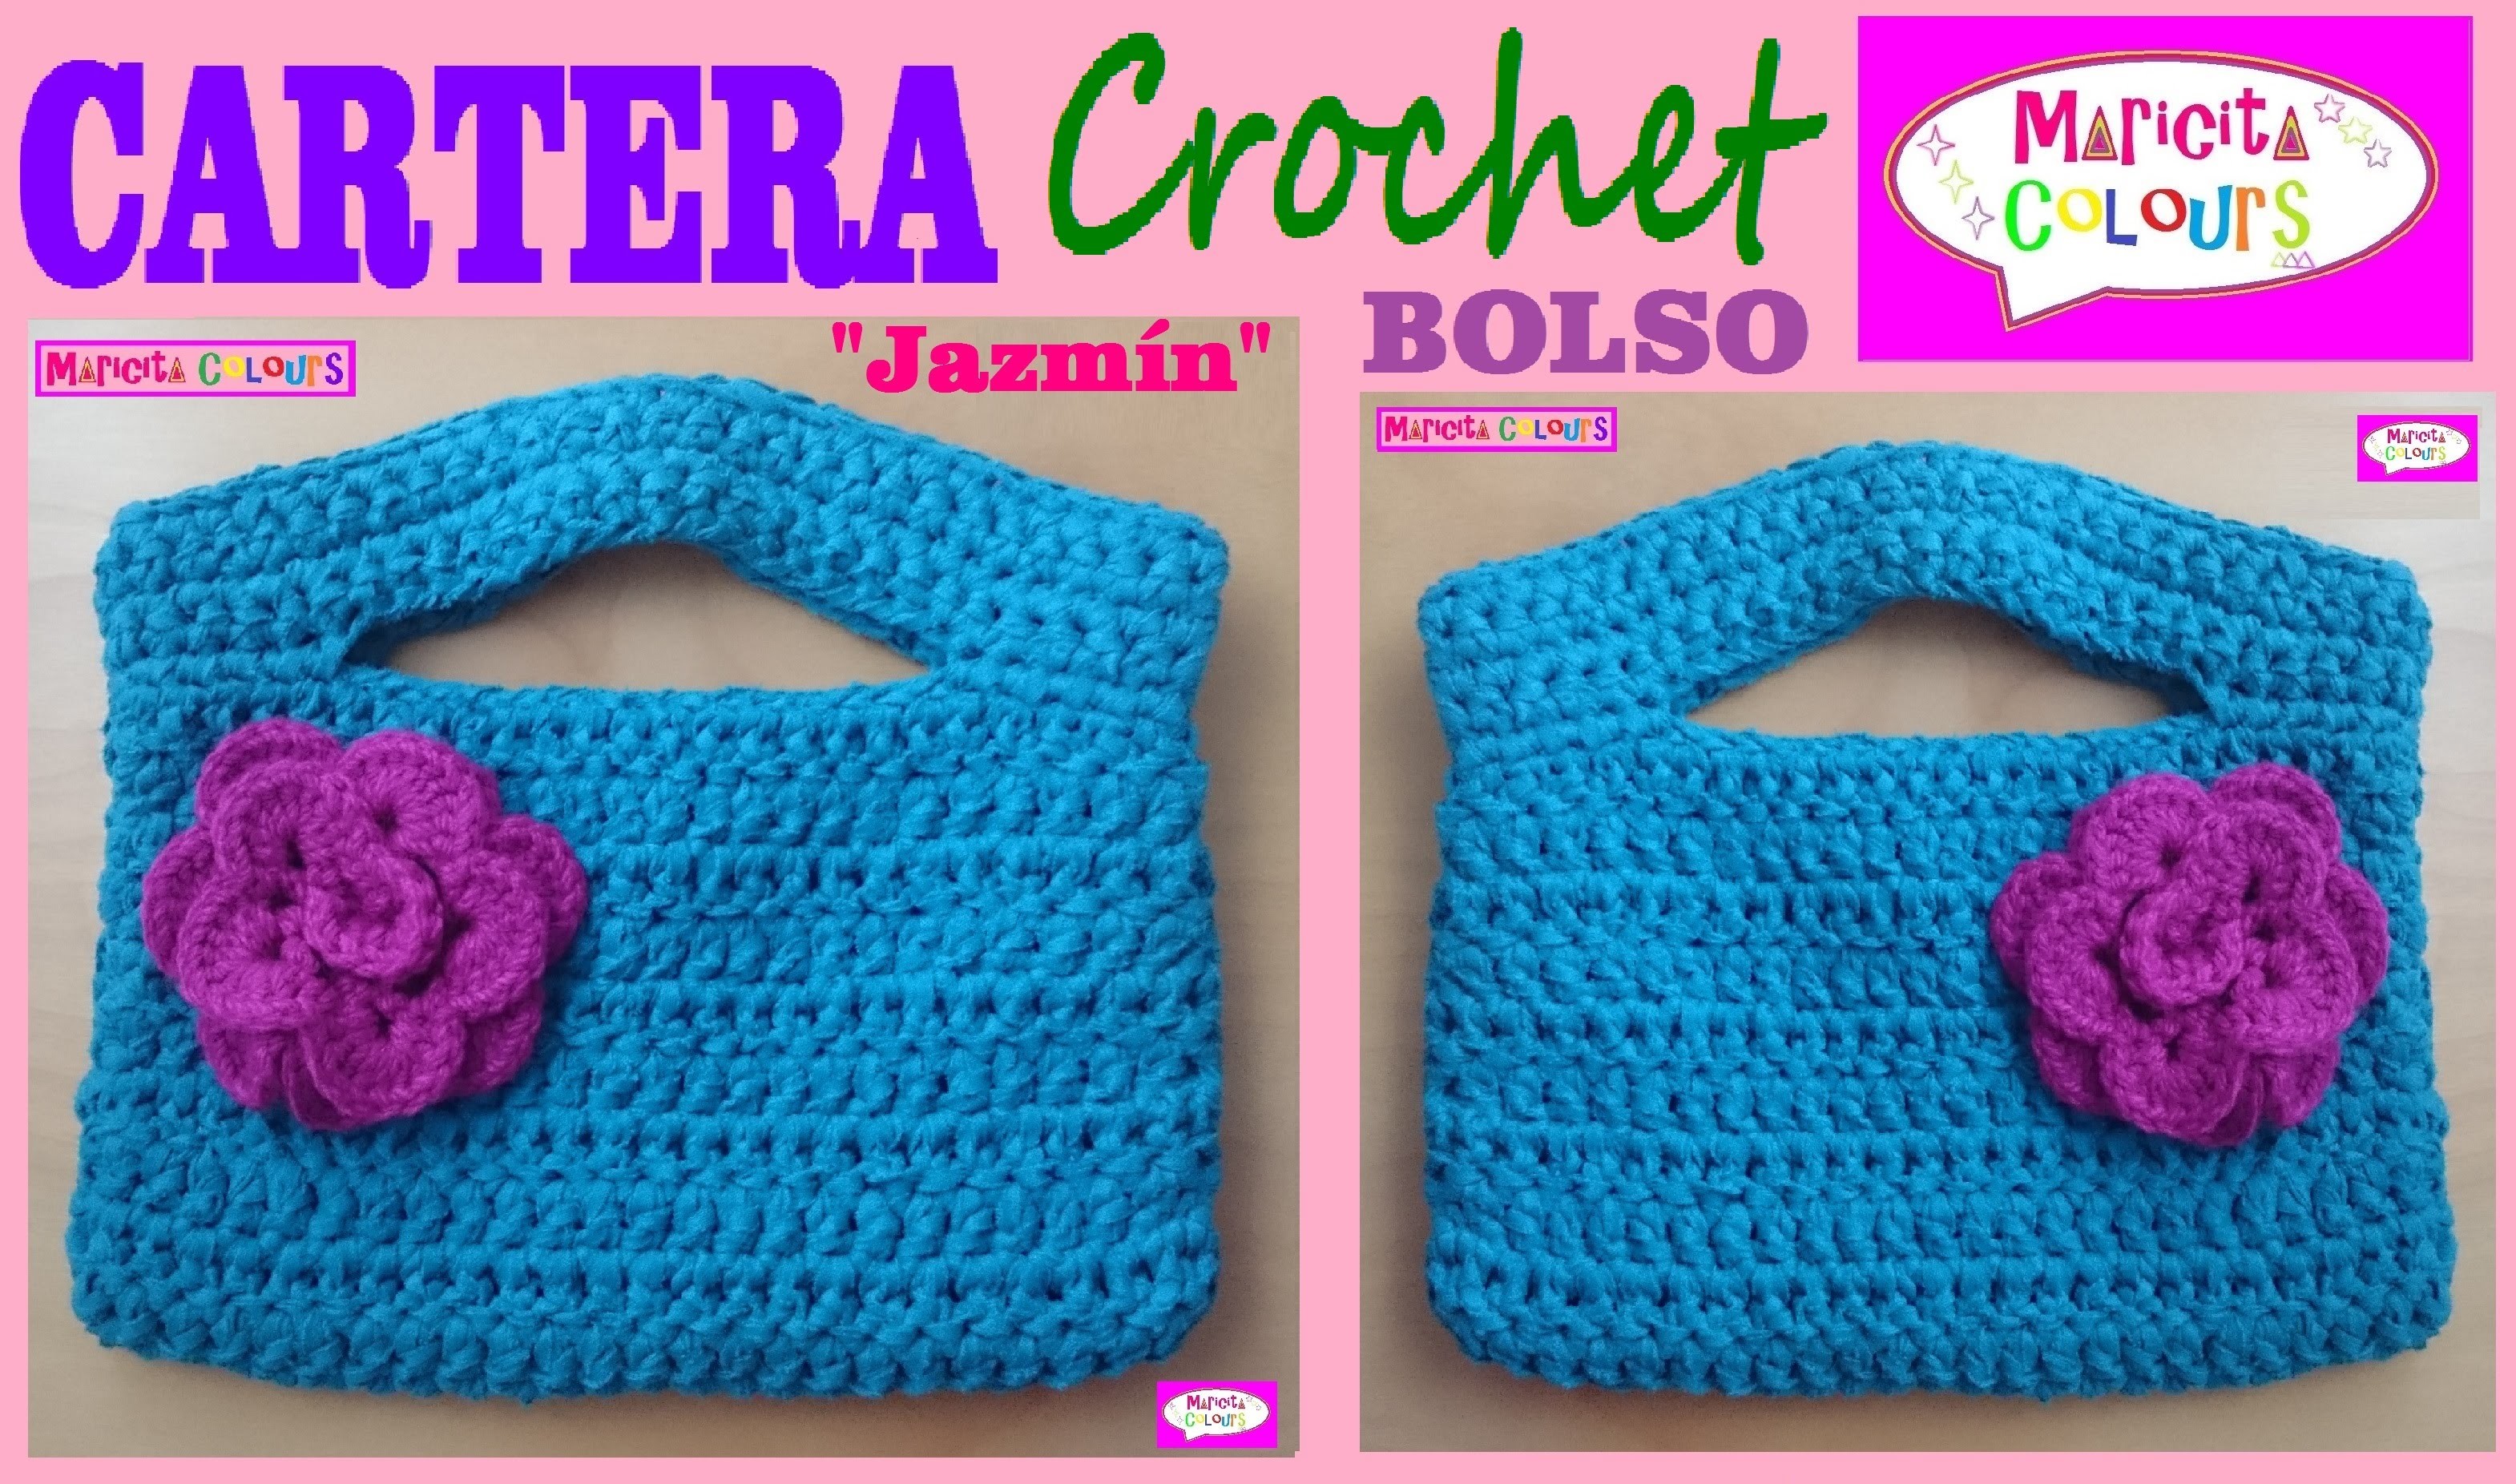 Cartera Bolso a Crochet "Jazmín" por Maricita Colours